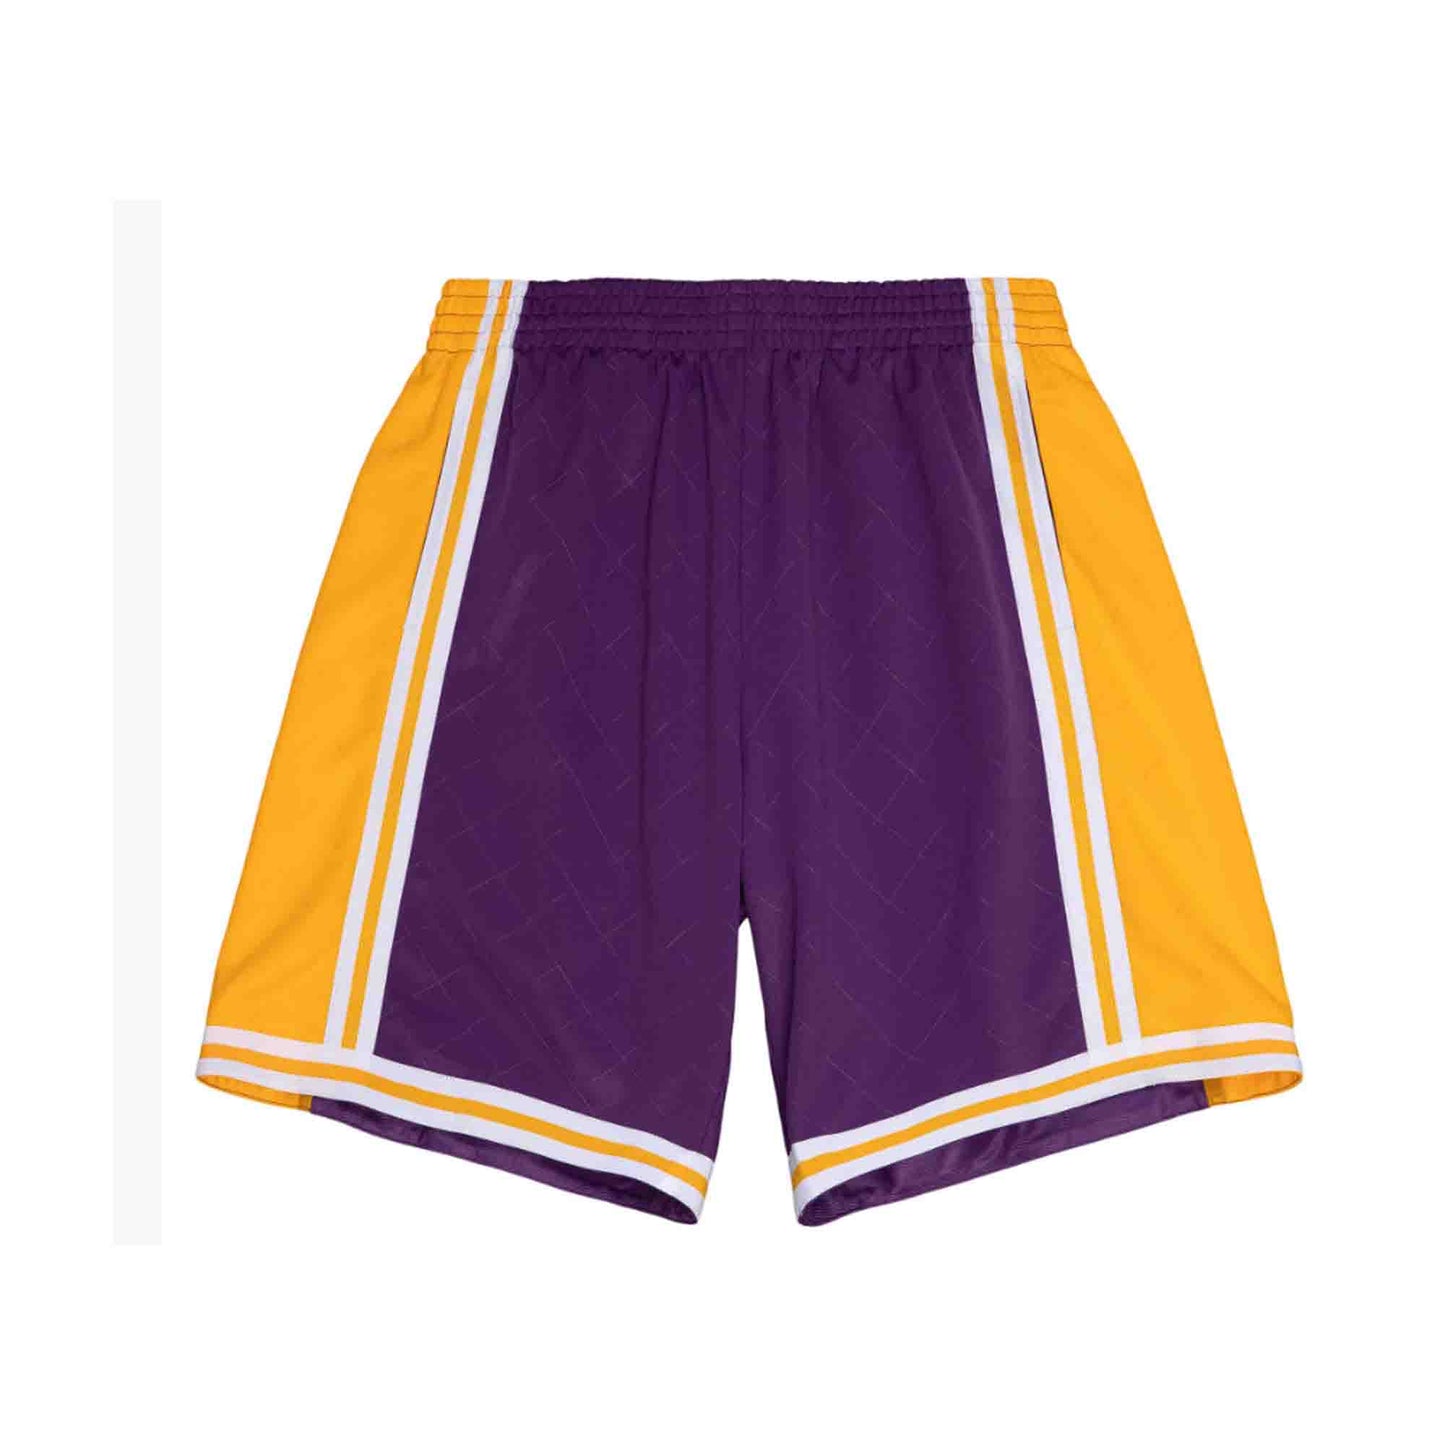 NBA Swingman Shorts Los Angeles Lakers 1984-85